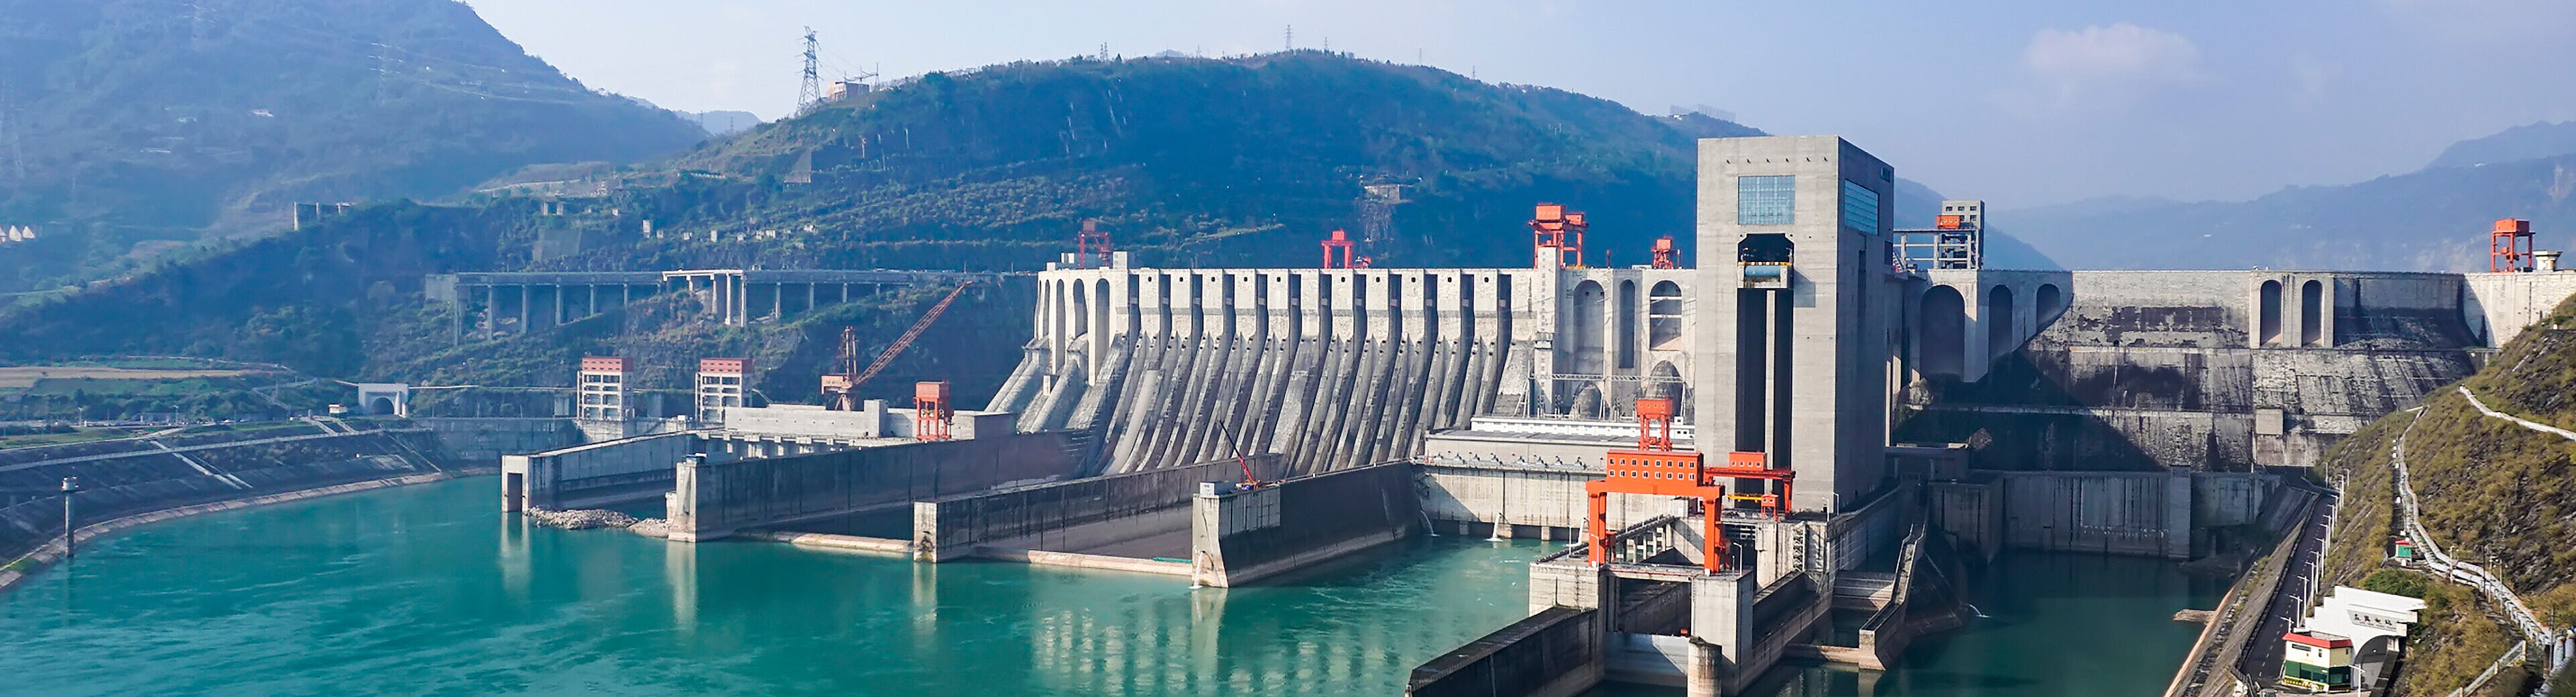 Innotech protege las zonas peligrosas de la central hidroeléctrica y sus alrededores